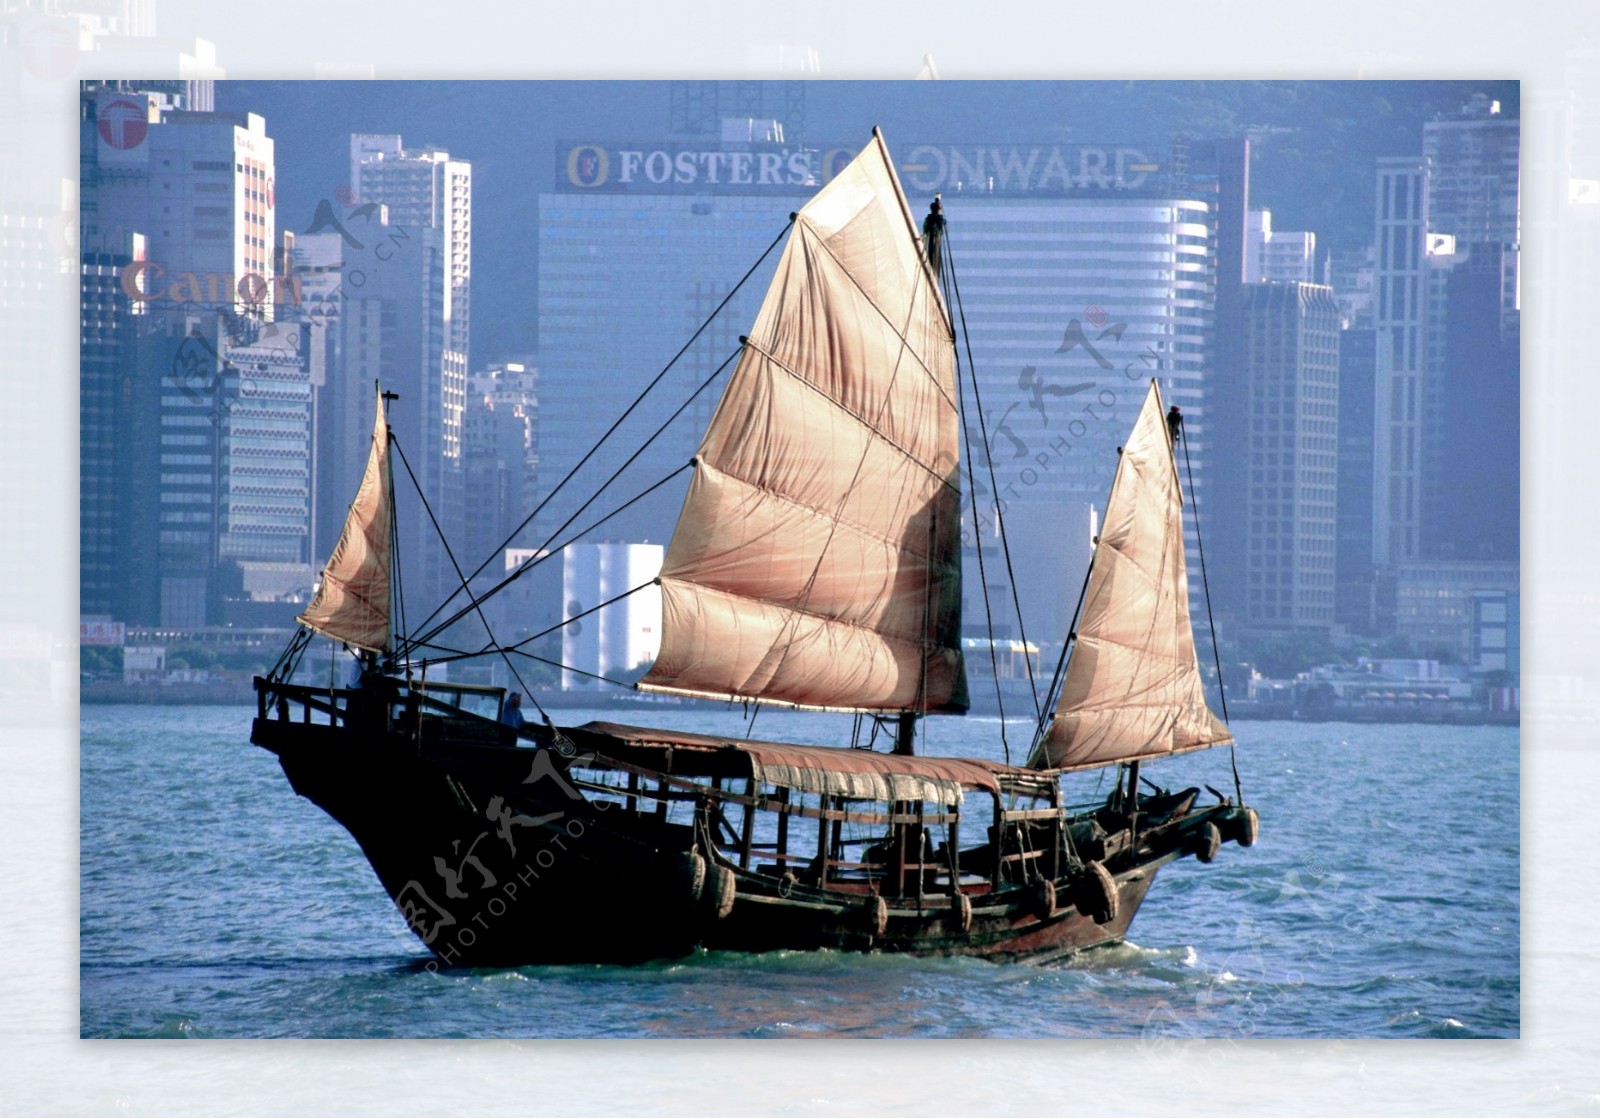 维多利亚港的帆船